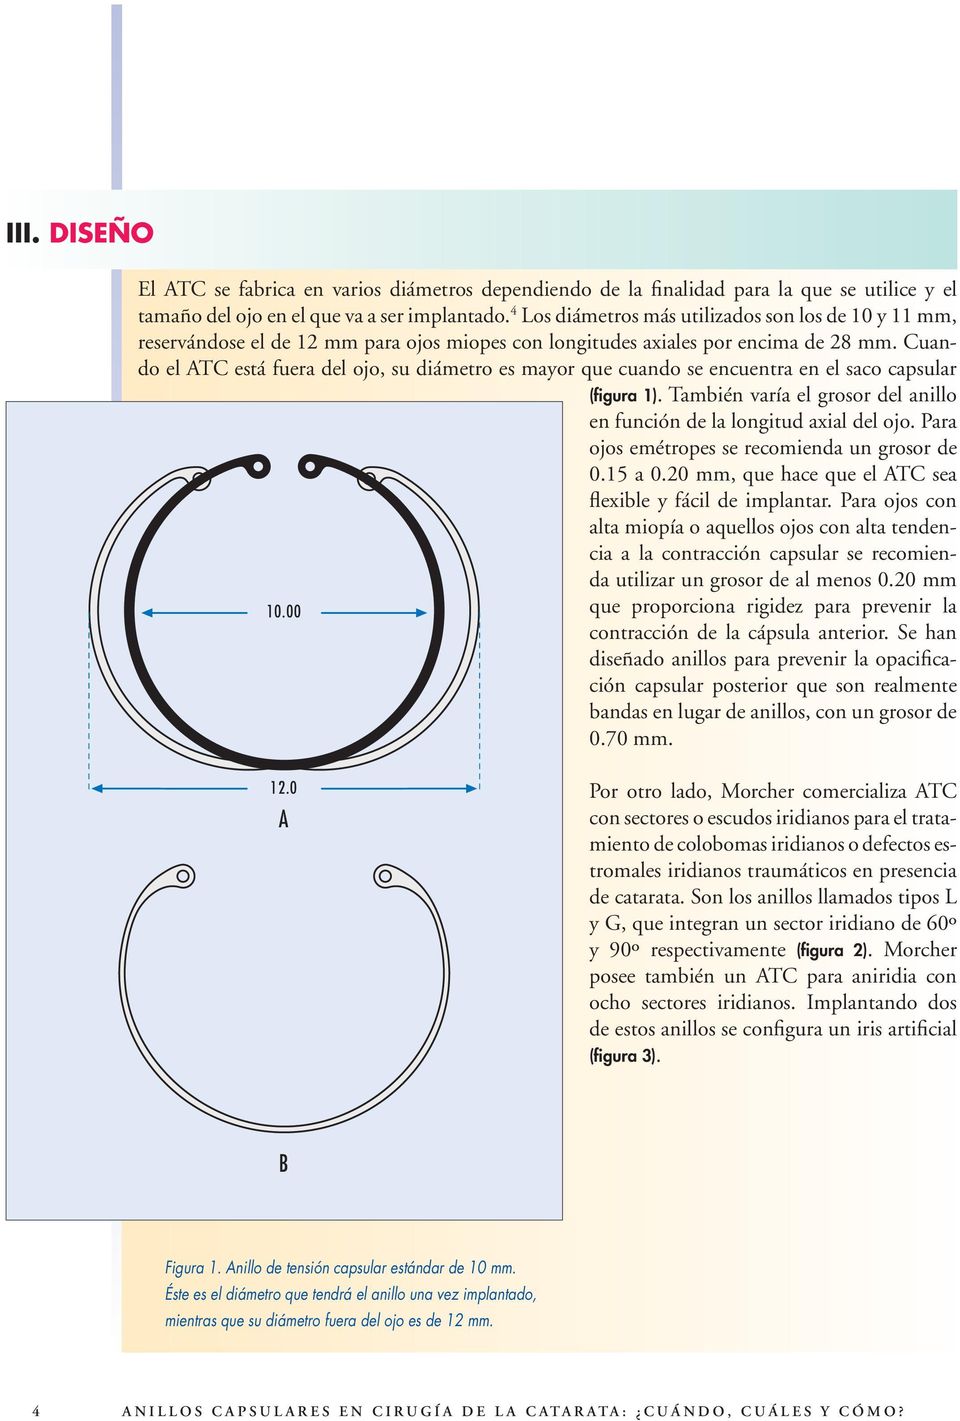 Cuando el ATC está fuera del ojo, su diámetro es mayor que cuando se encuentra en el saco capsular (figura 1). También varía el grosor del anillo en función de la longitud axial del ojo.